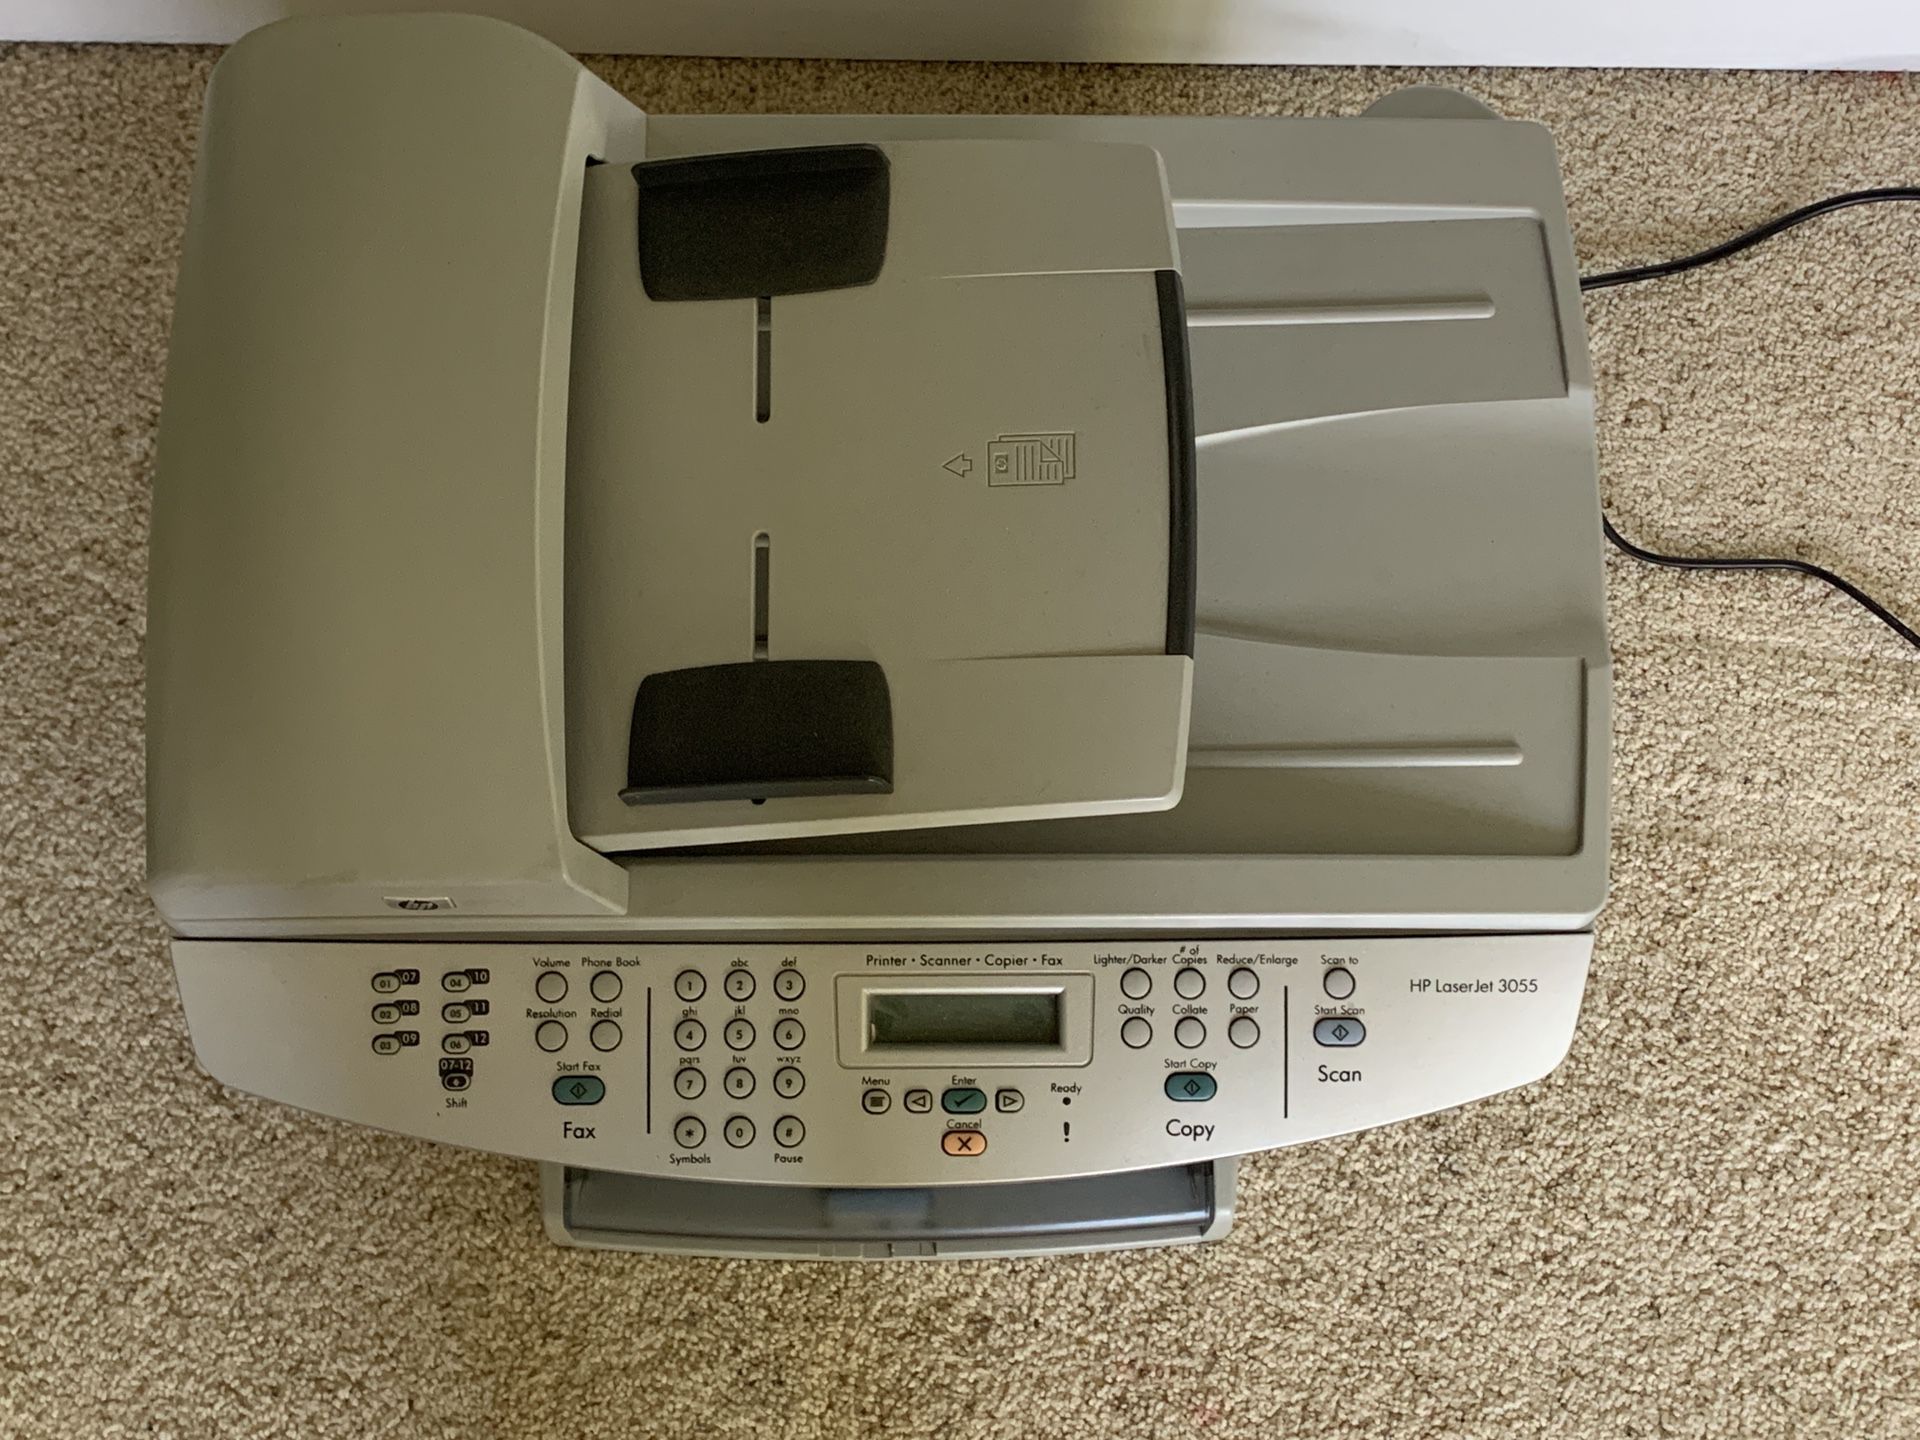 Printer/Scanner/Faxer